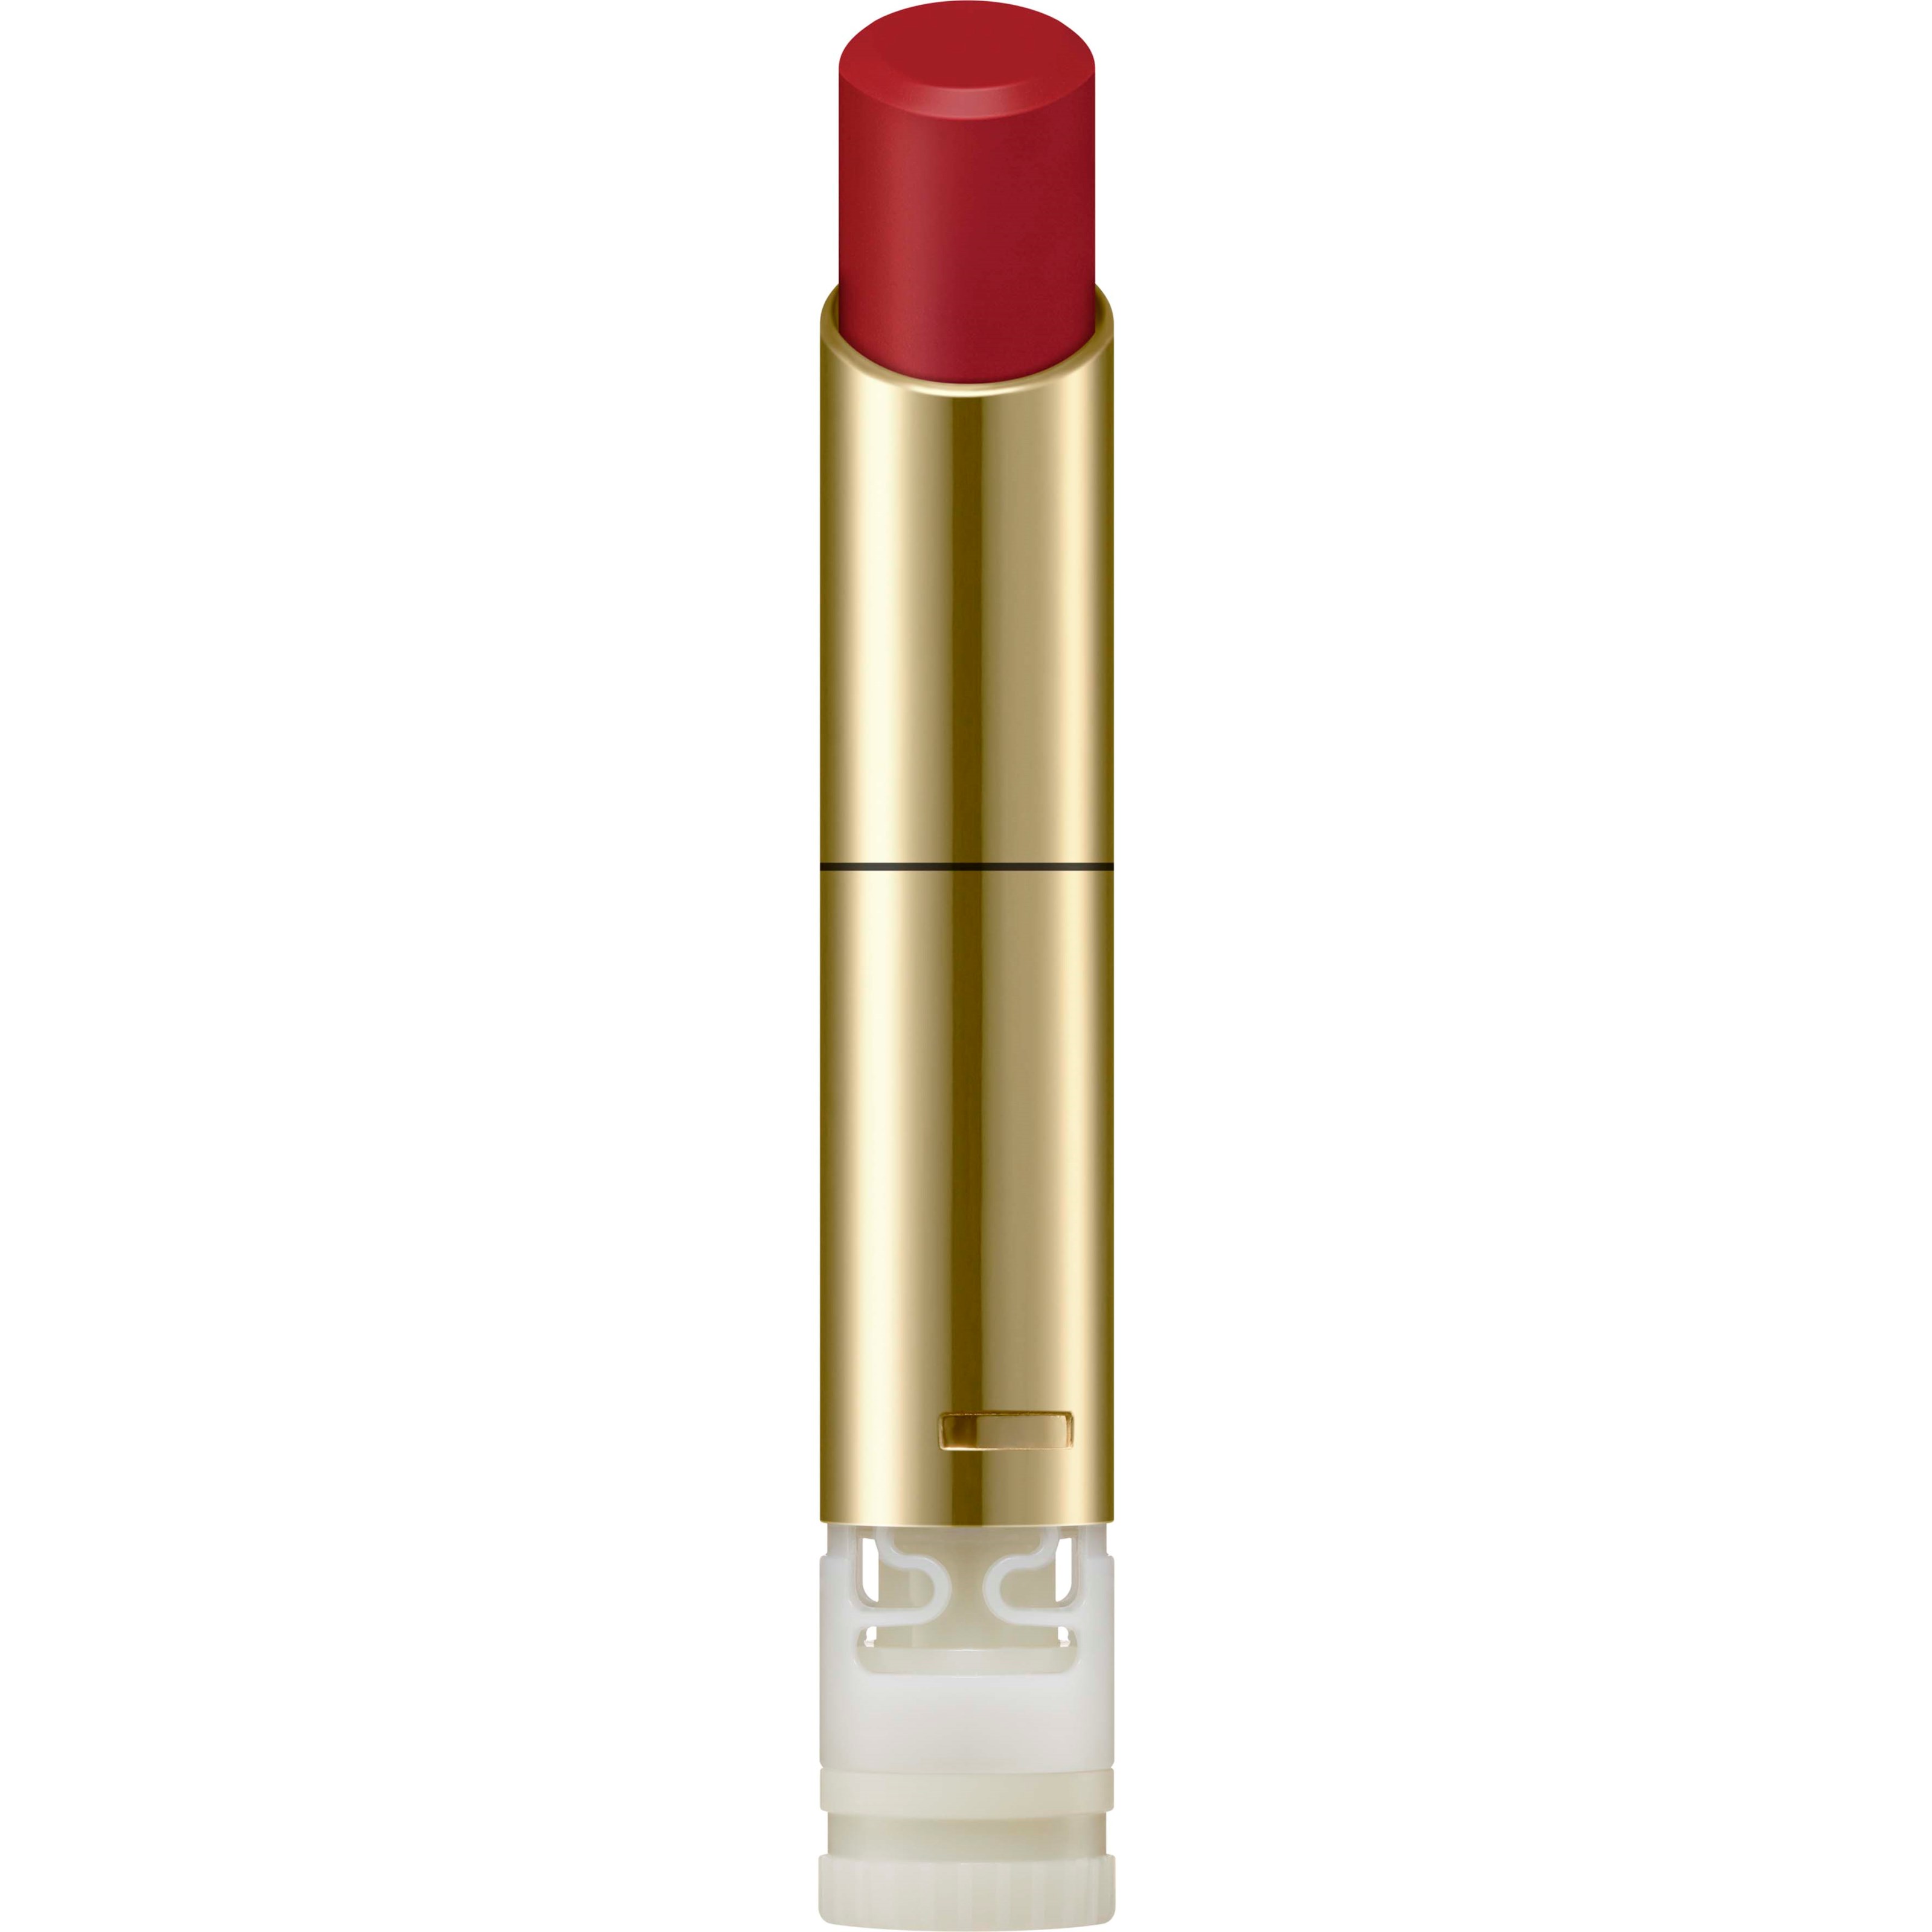 Bilde av Sensai Lasting Plump Lipstick Lp01 Ruby Red